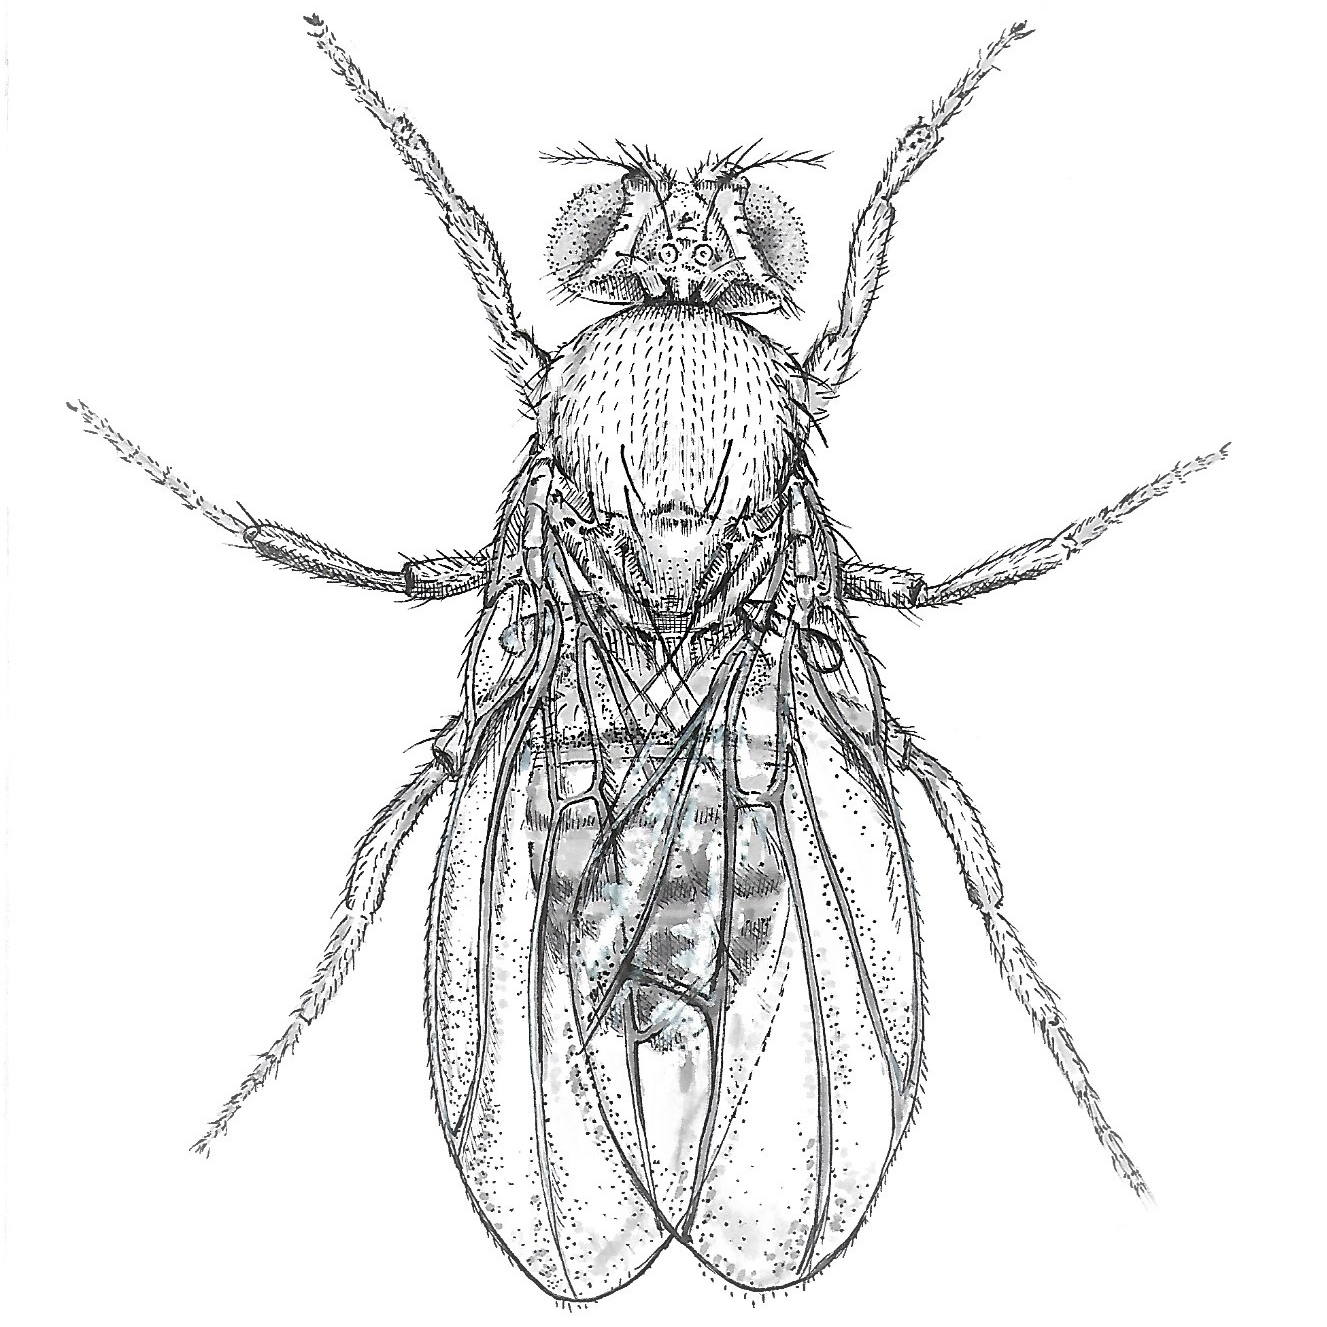 Drosophila graphic by Zoe Zorn CC BY 4.0